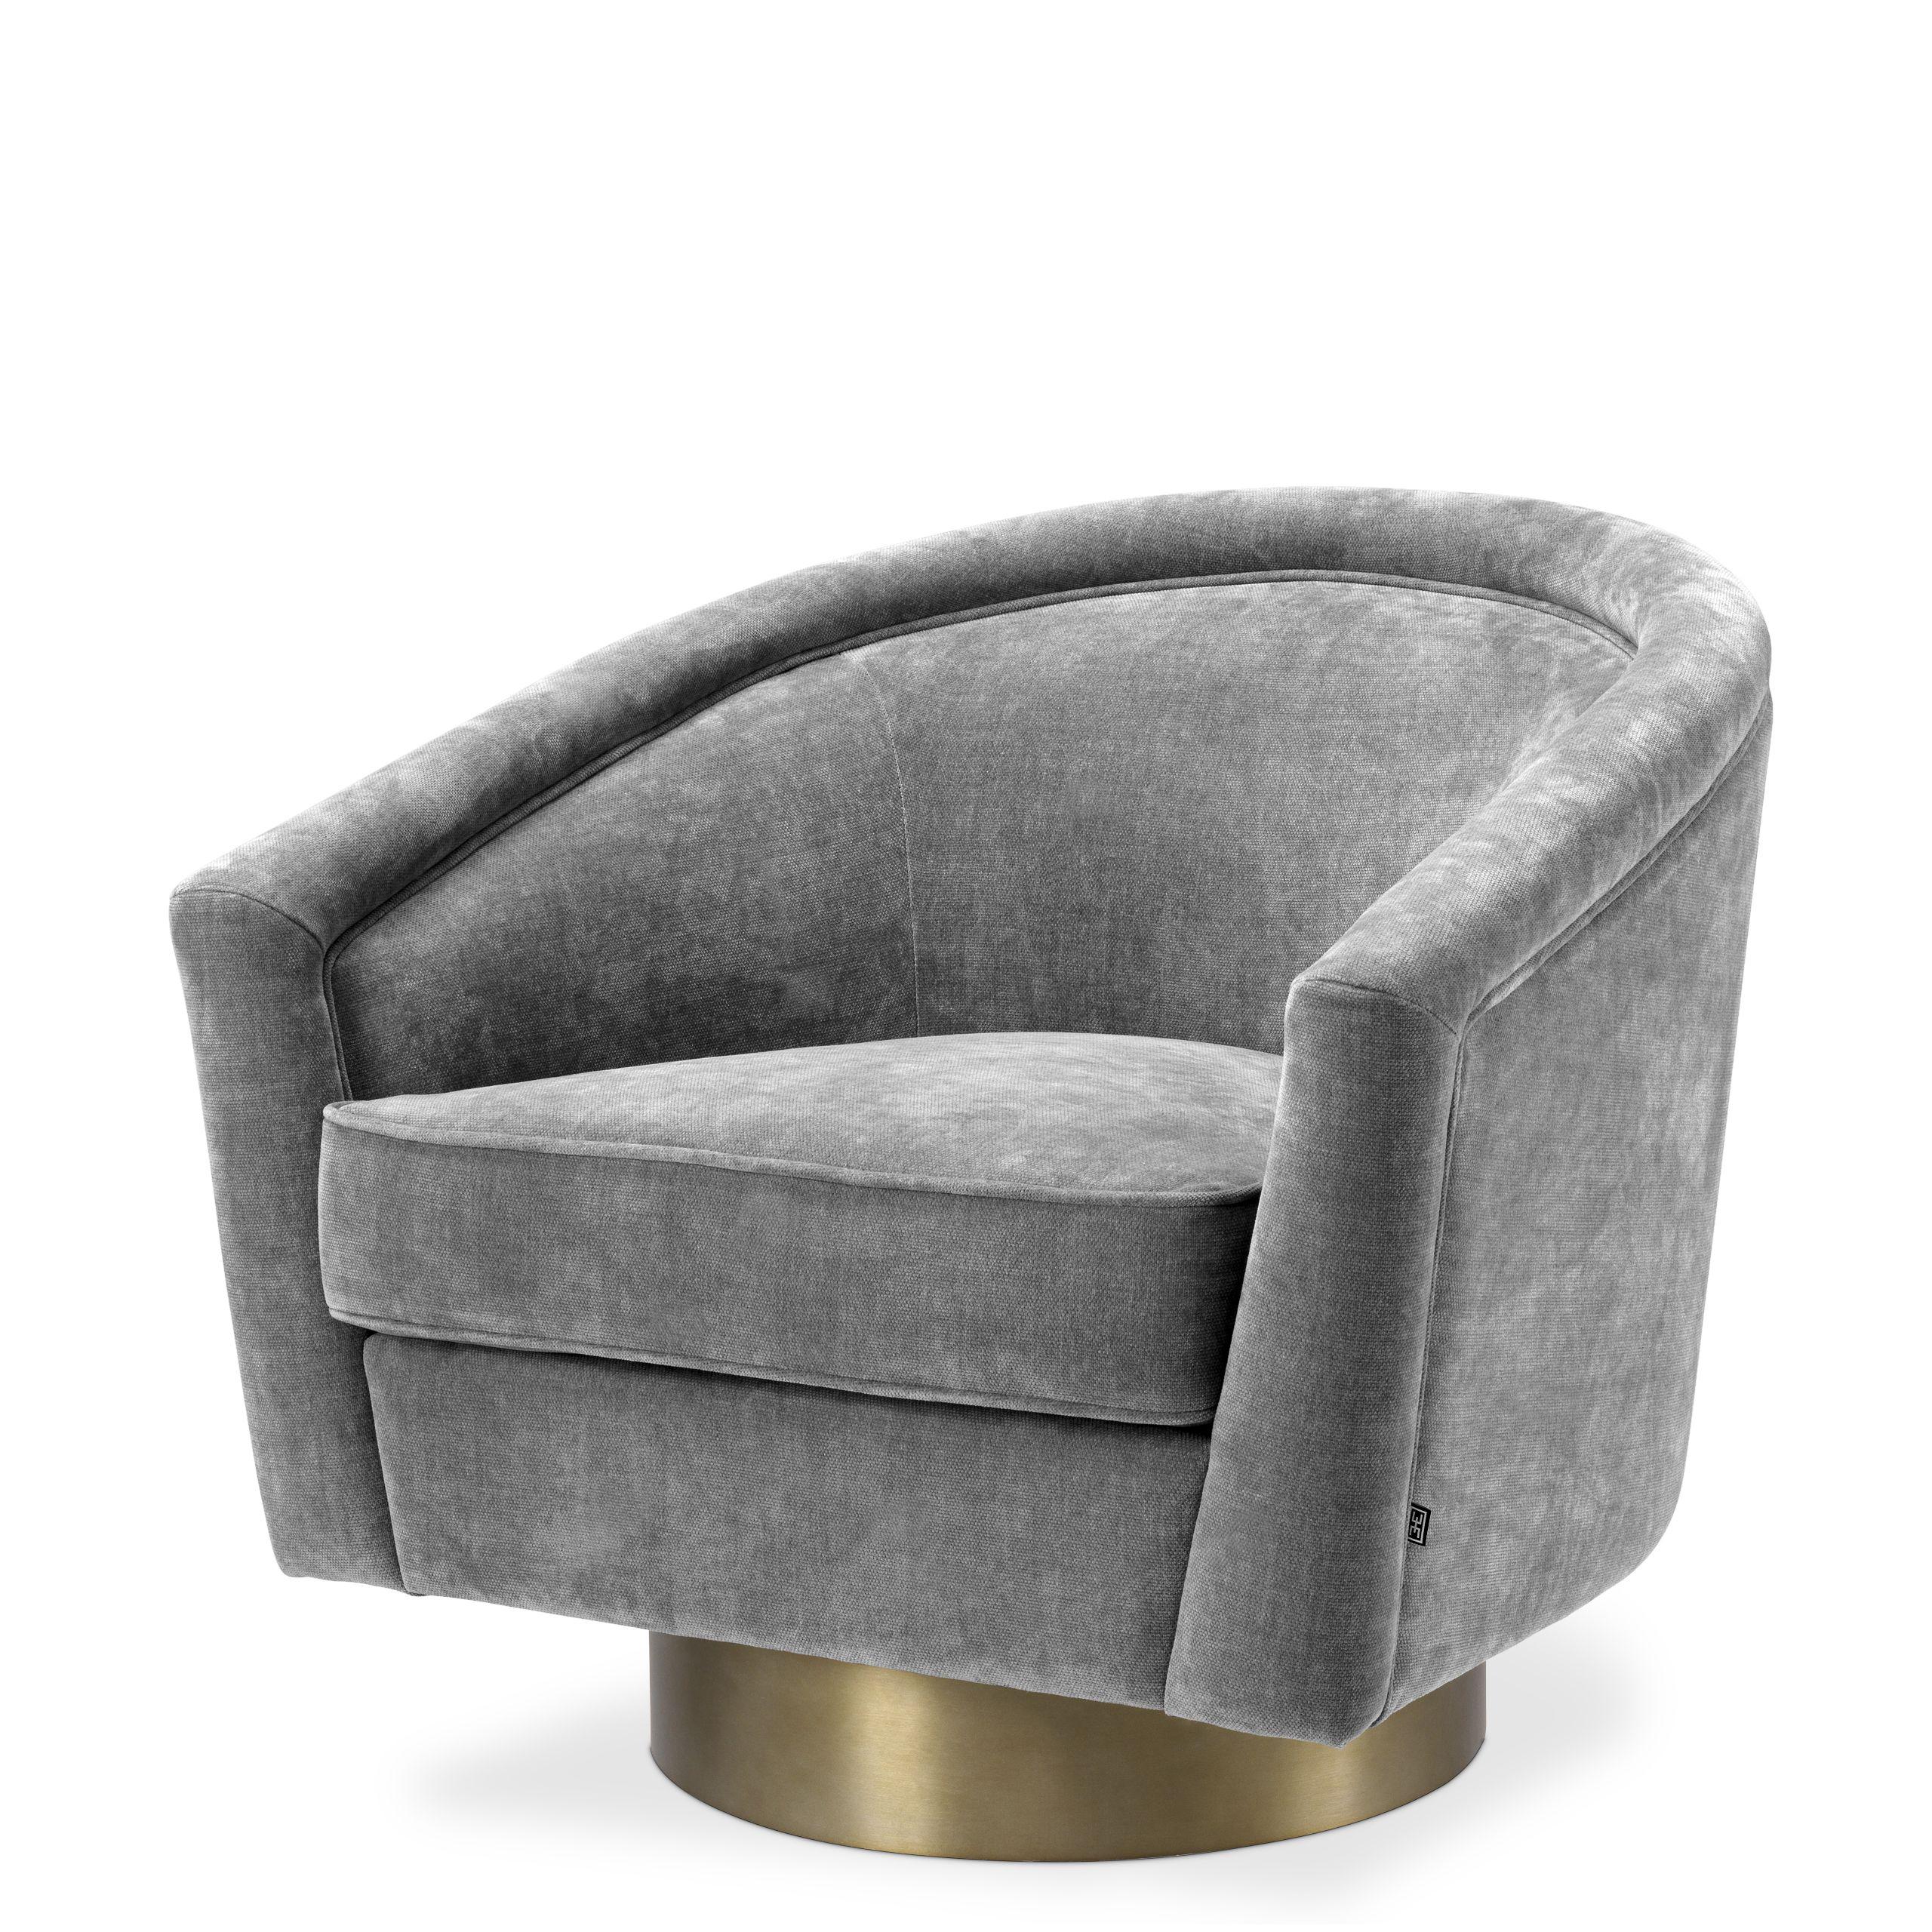 Купить Крутящееся кресло Swivel Chair Catene в интернет-магазине roooms.ru